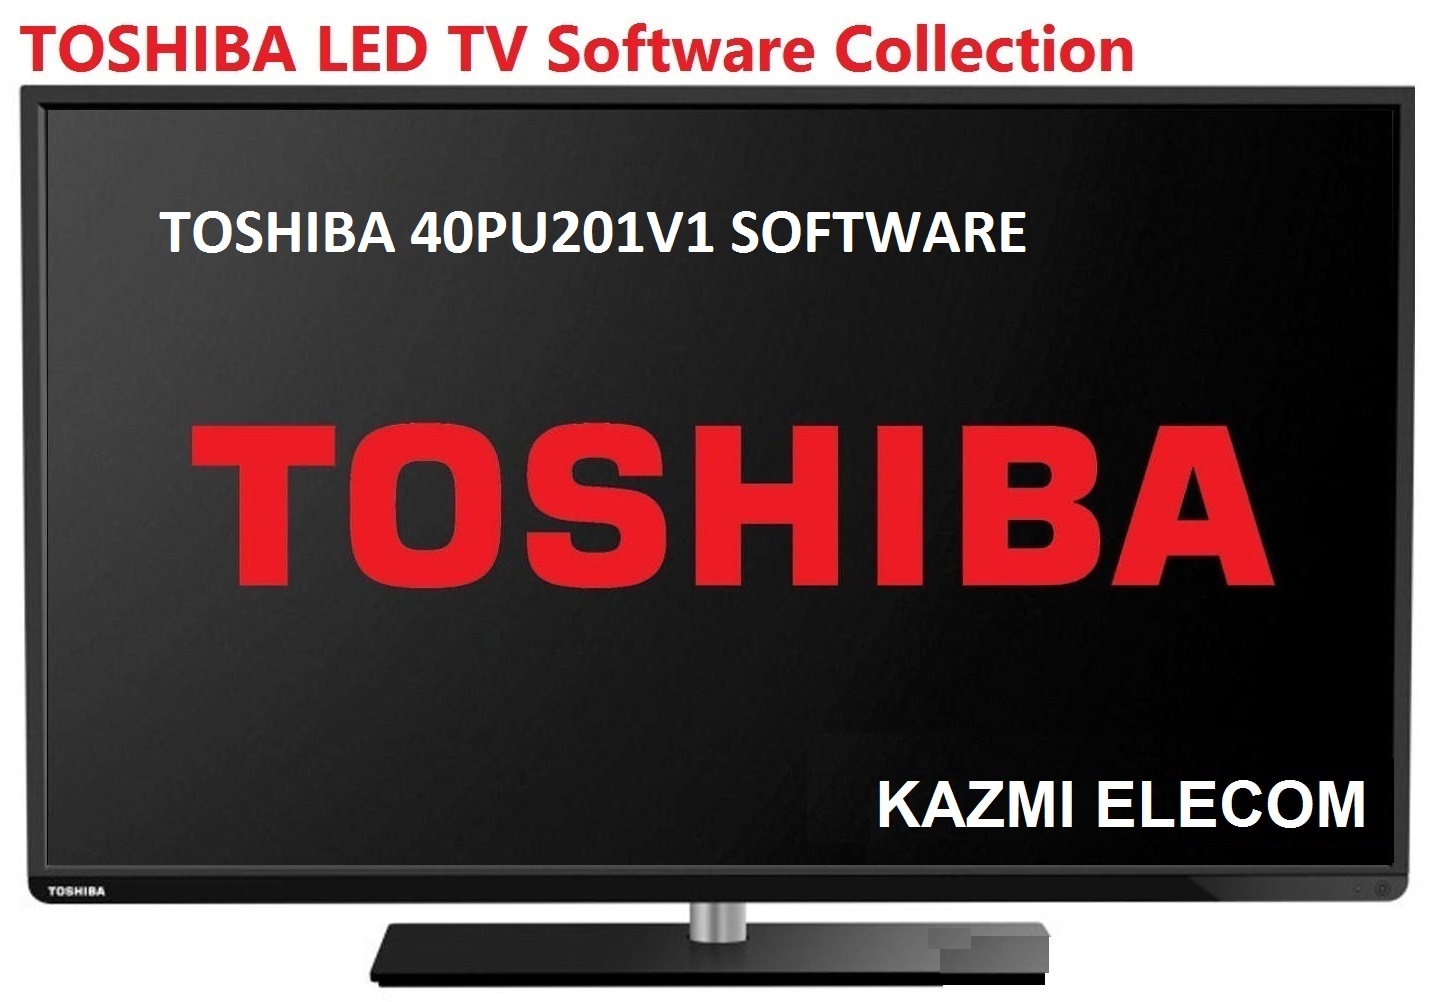 Toshiba 40Pu201V1